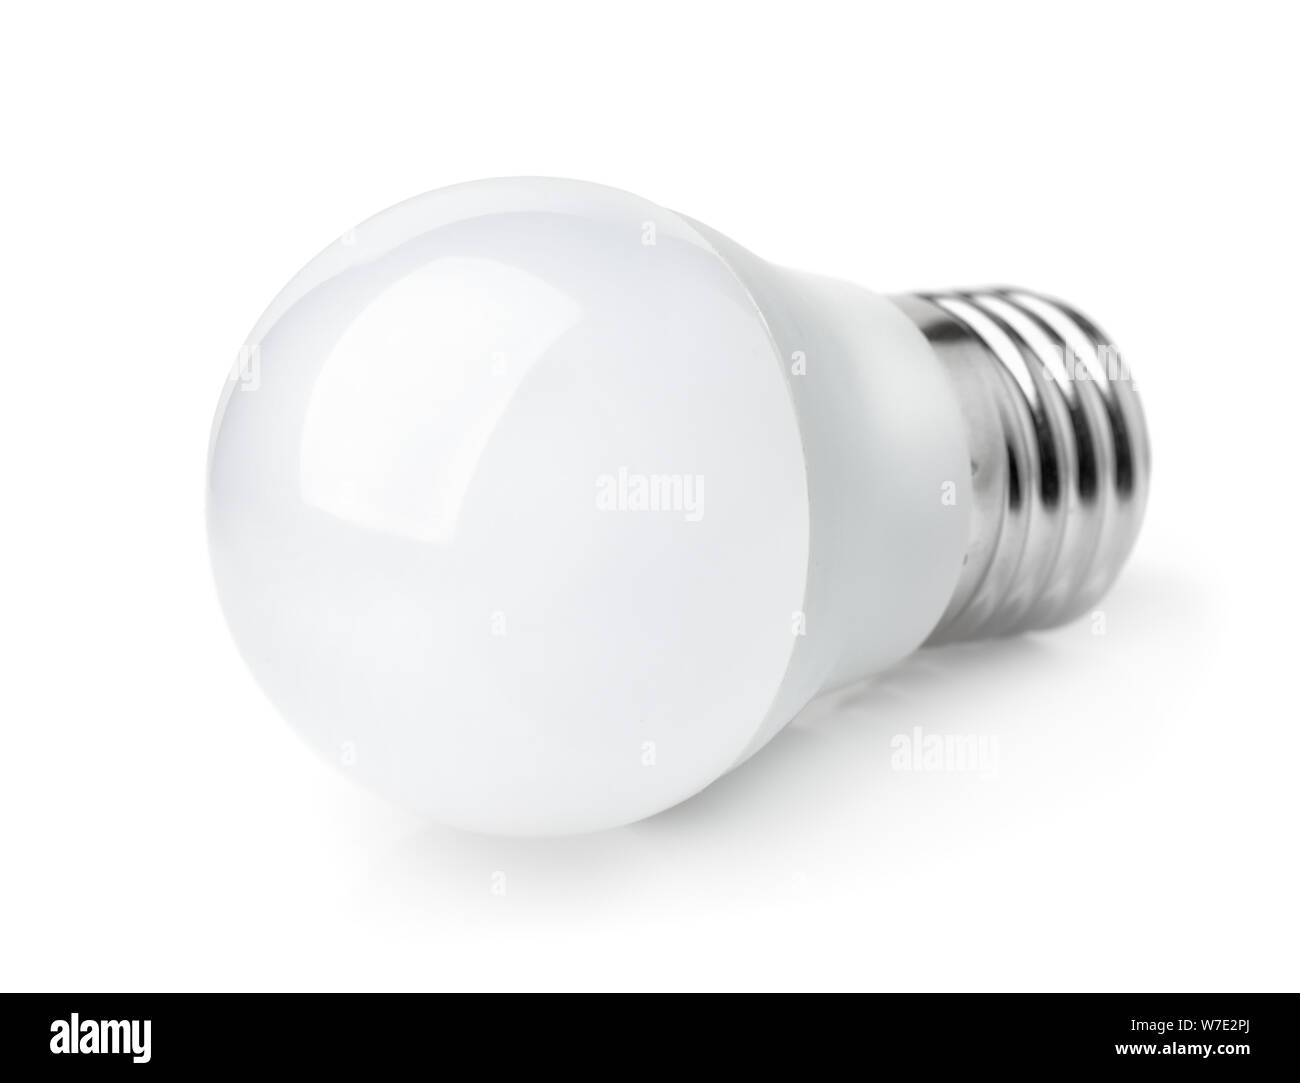 LED light bulb isolated on white Stock Photo